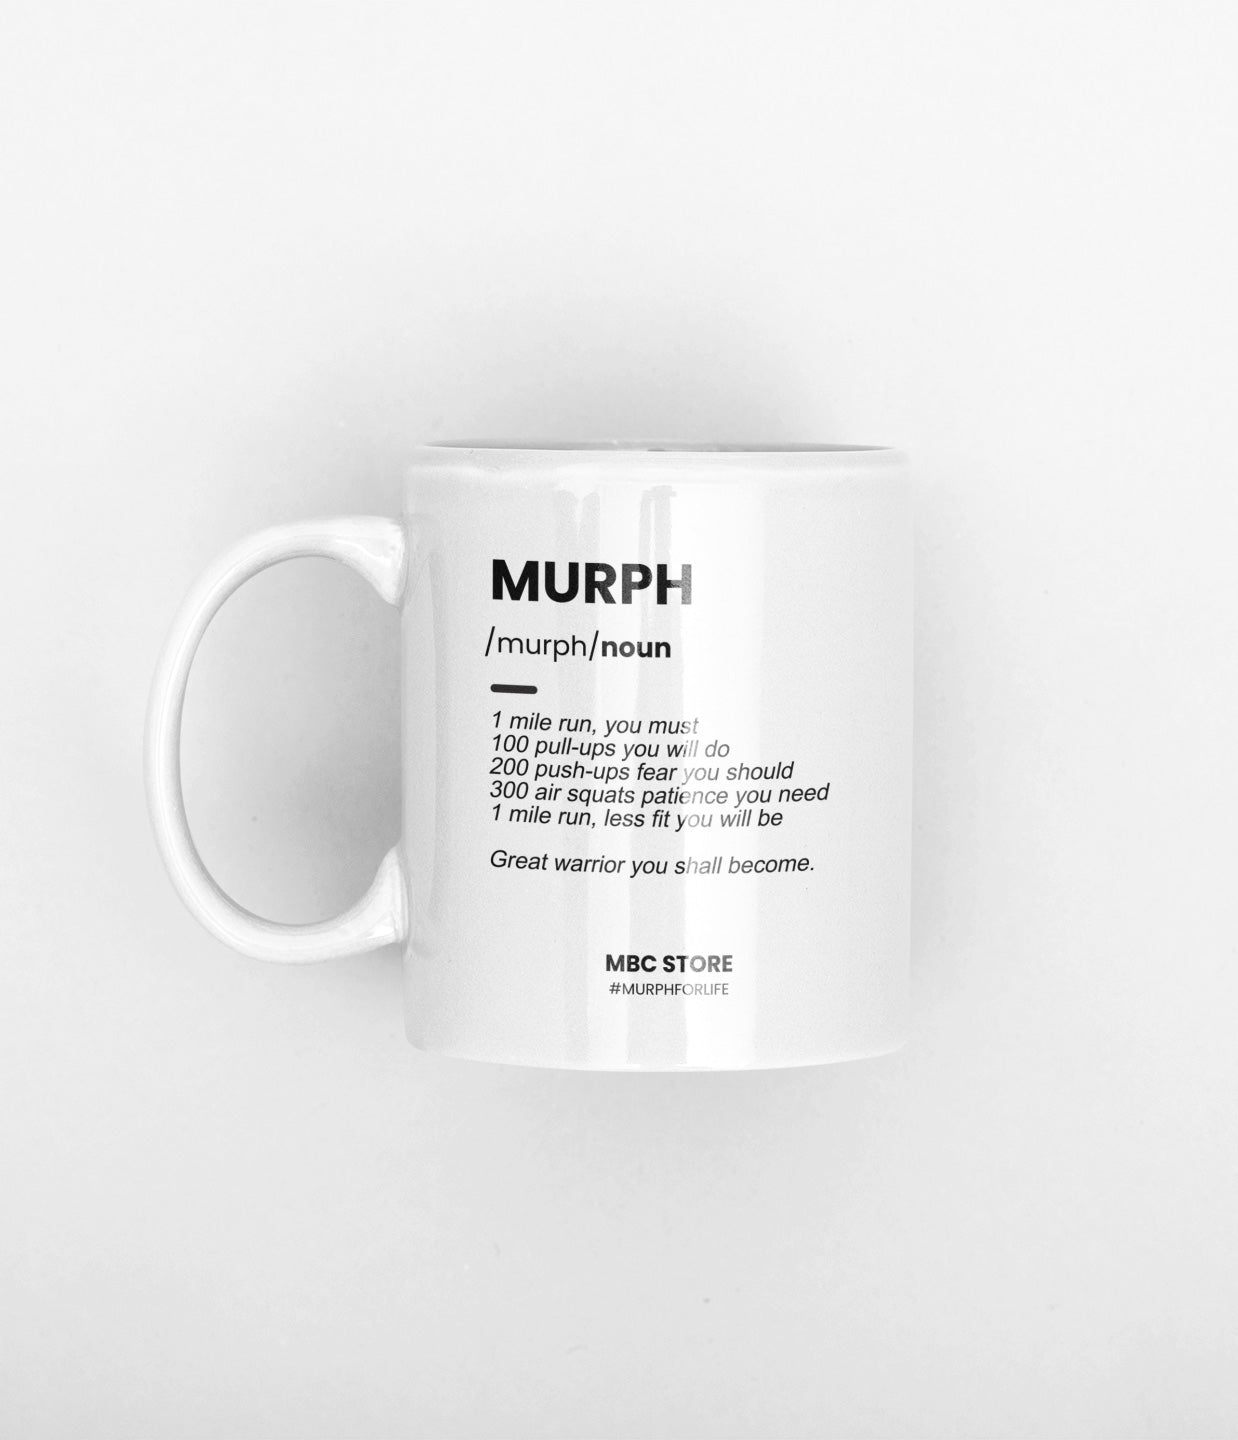 murph-en-mbc-store.jpg